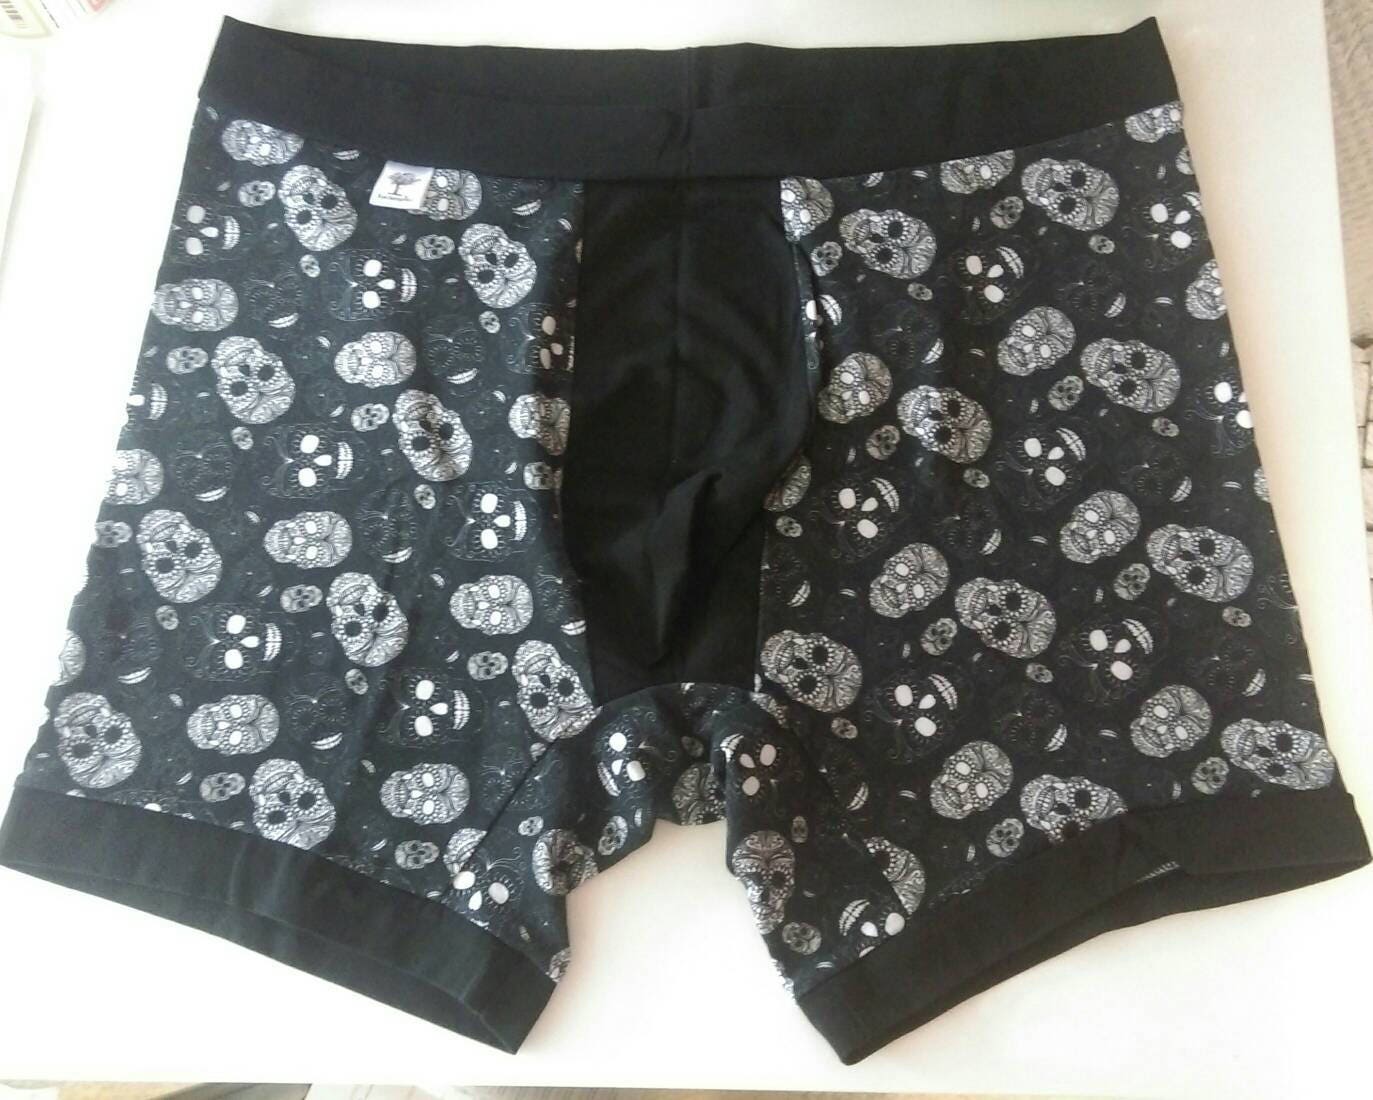 XXL men's boxers underwear (38-42 inch waist) Made by RackenzieZ